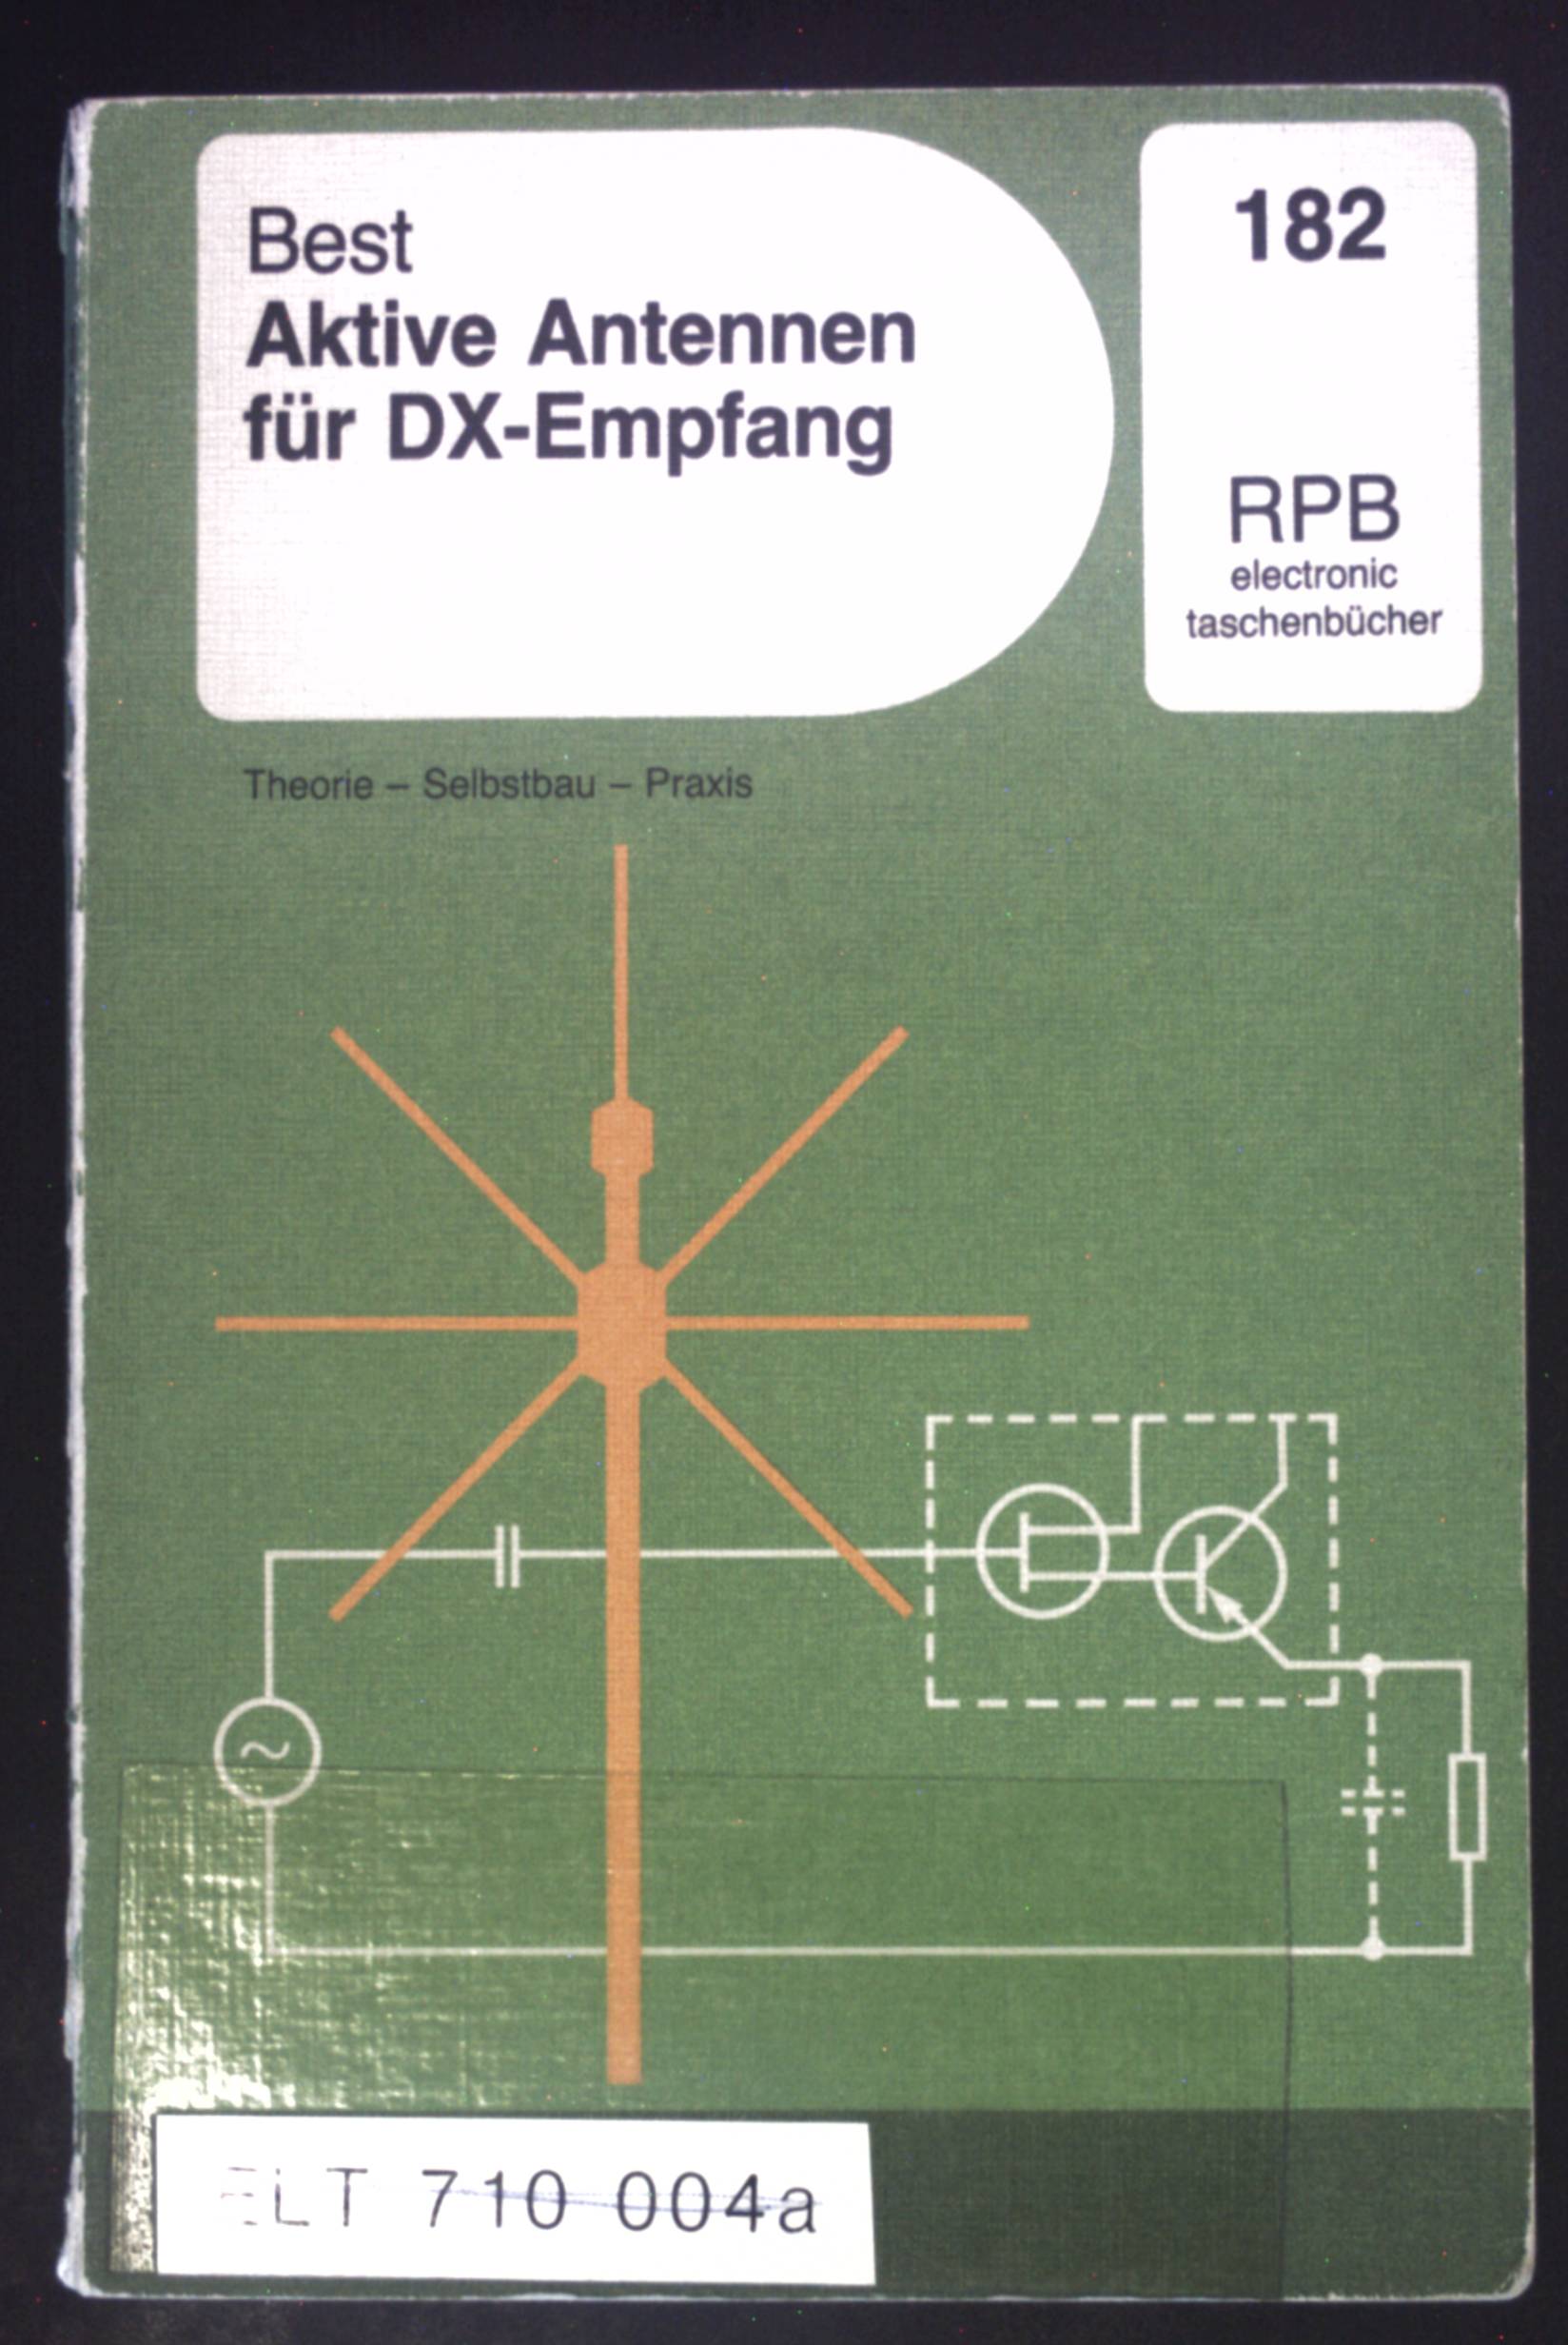 Aktive Antennen für DX-Empfang : Theorie - Selbstbau - Praxis. RPB-electronic-Taschenbücher ; Nr. 182 - Best, Siegfried W.